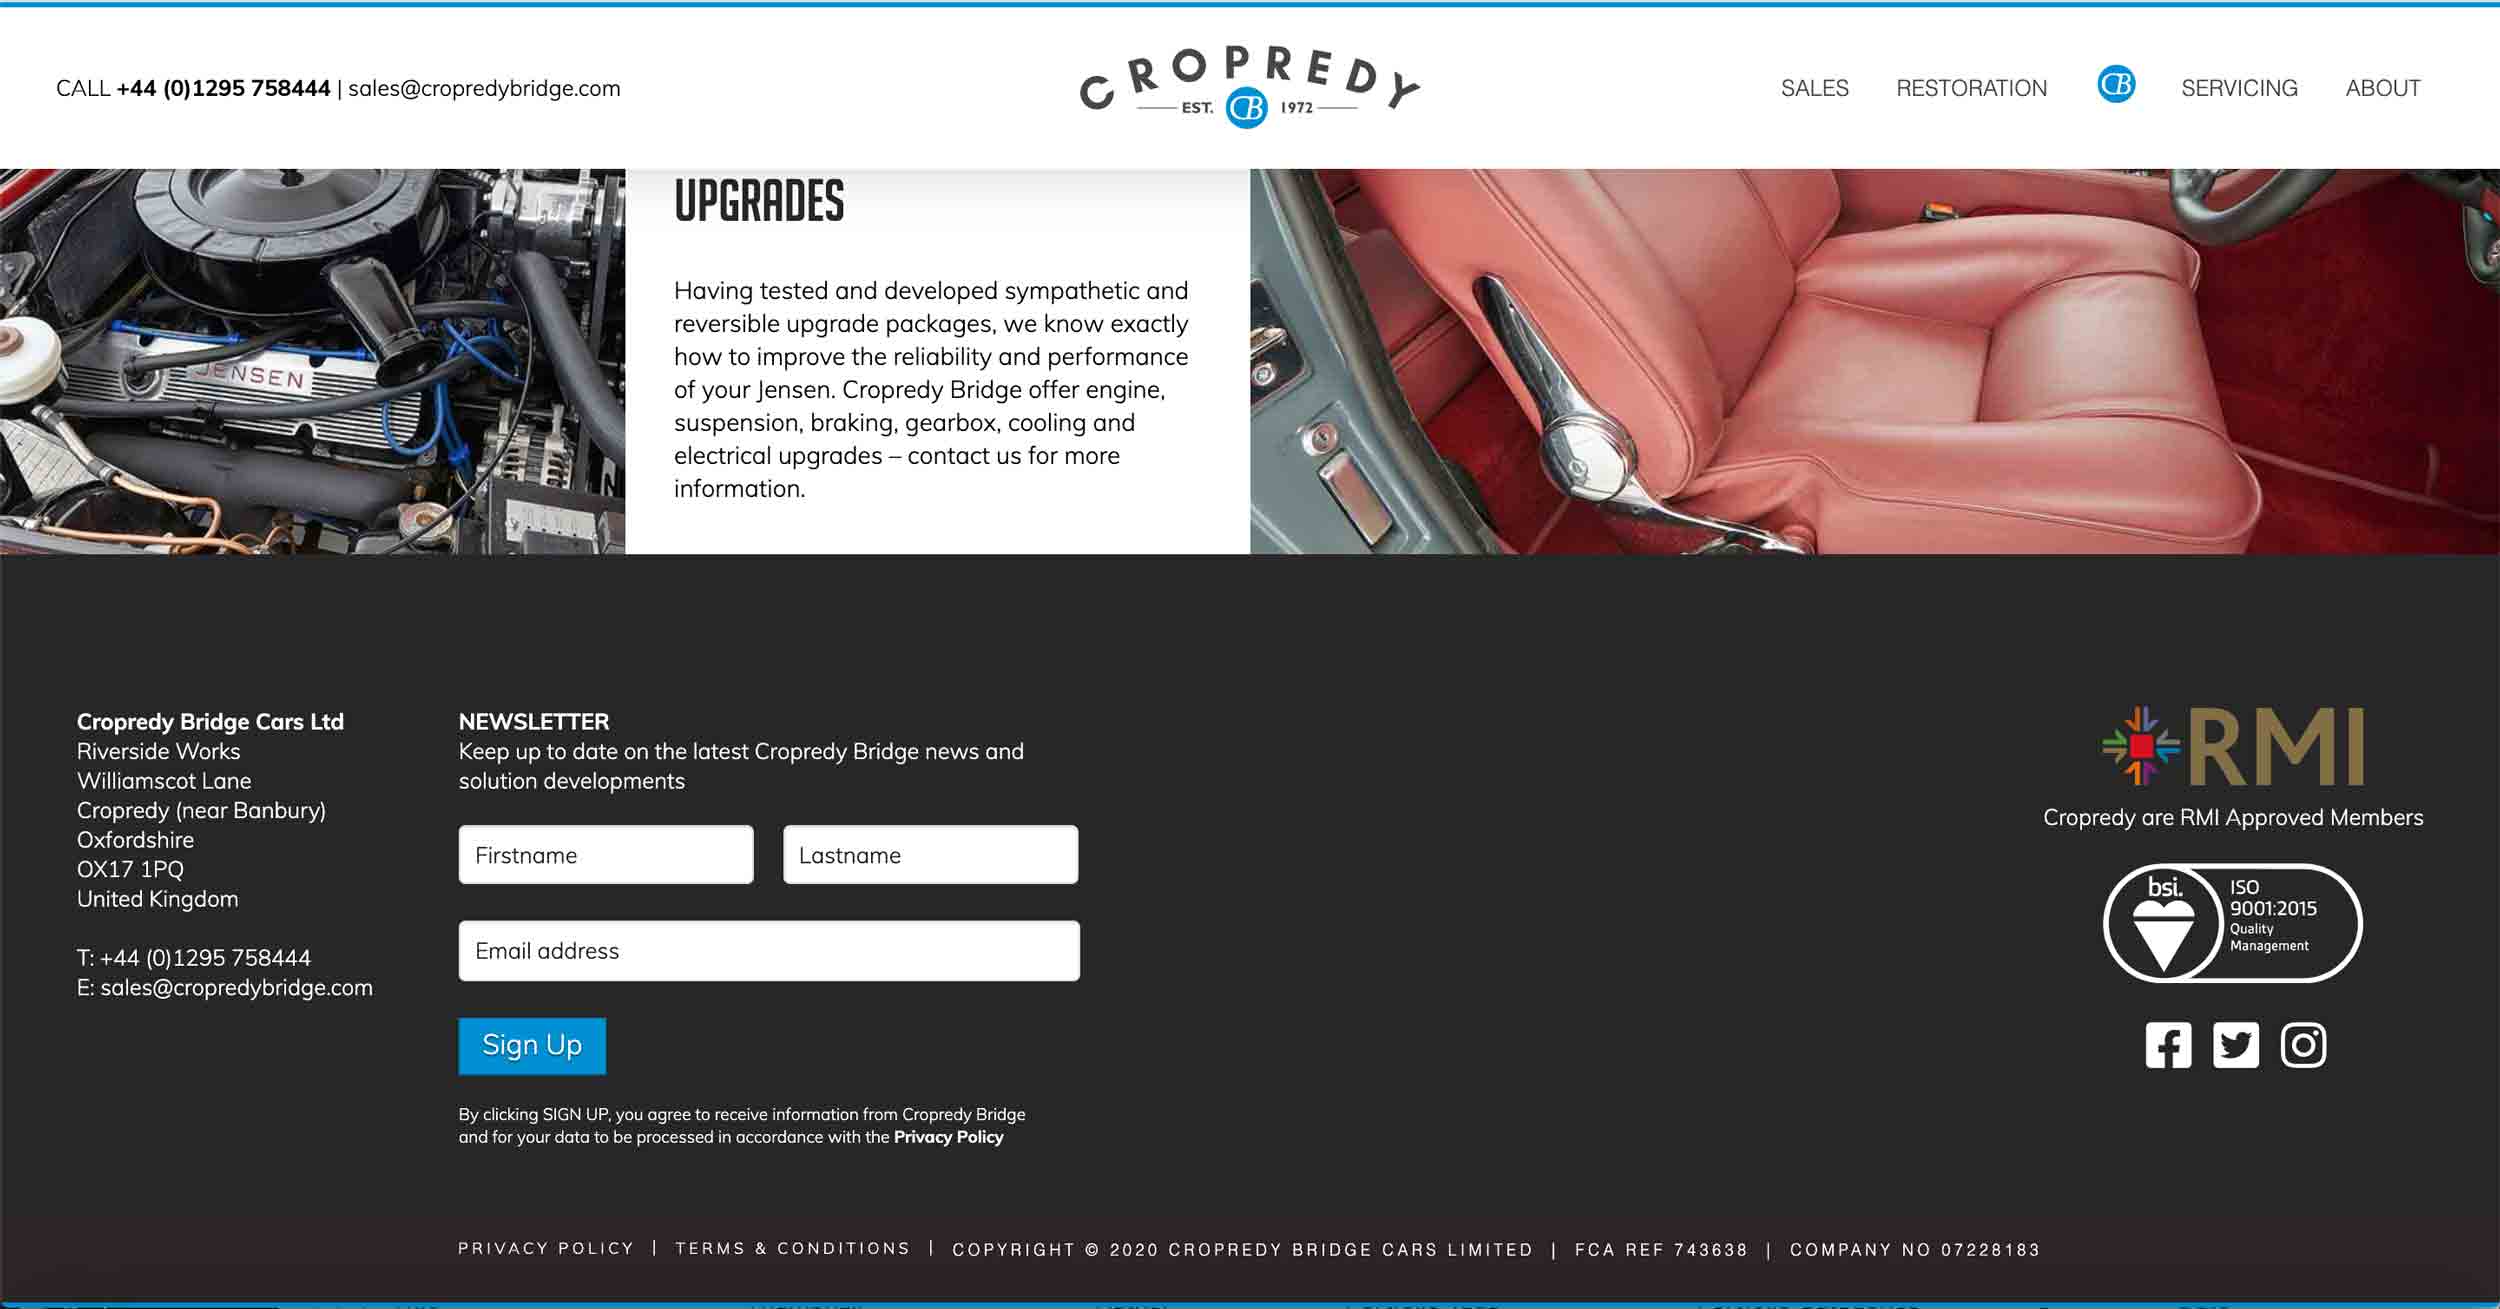 copredy bridge garage website development car restoration page design footer